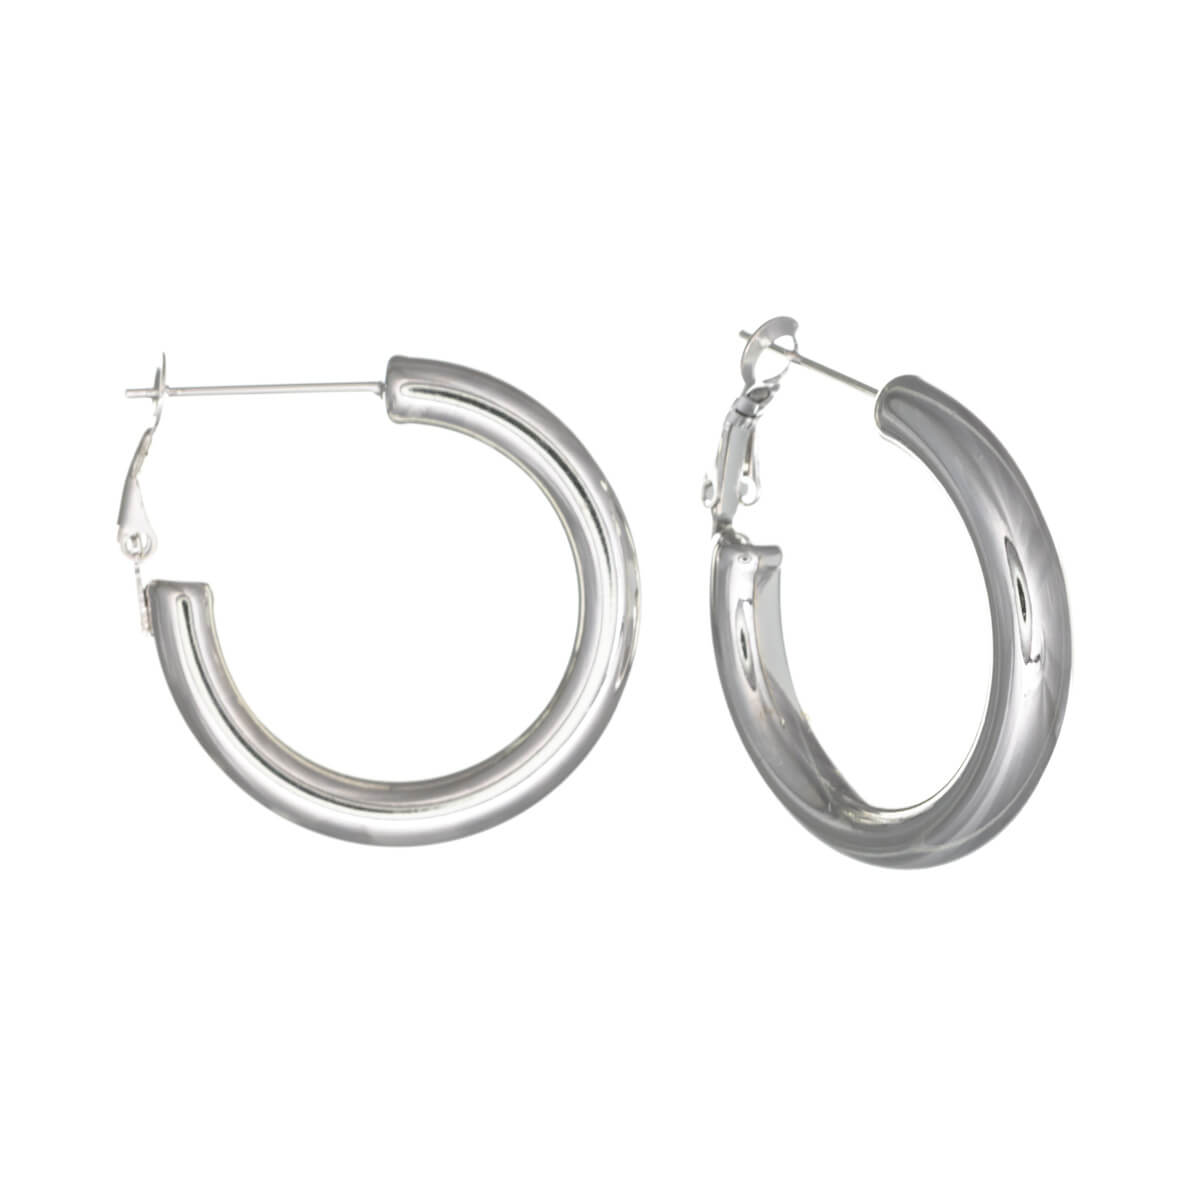 Thick steel earrings 5mm 3cm (Steel 316L)